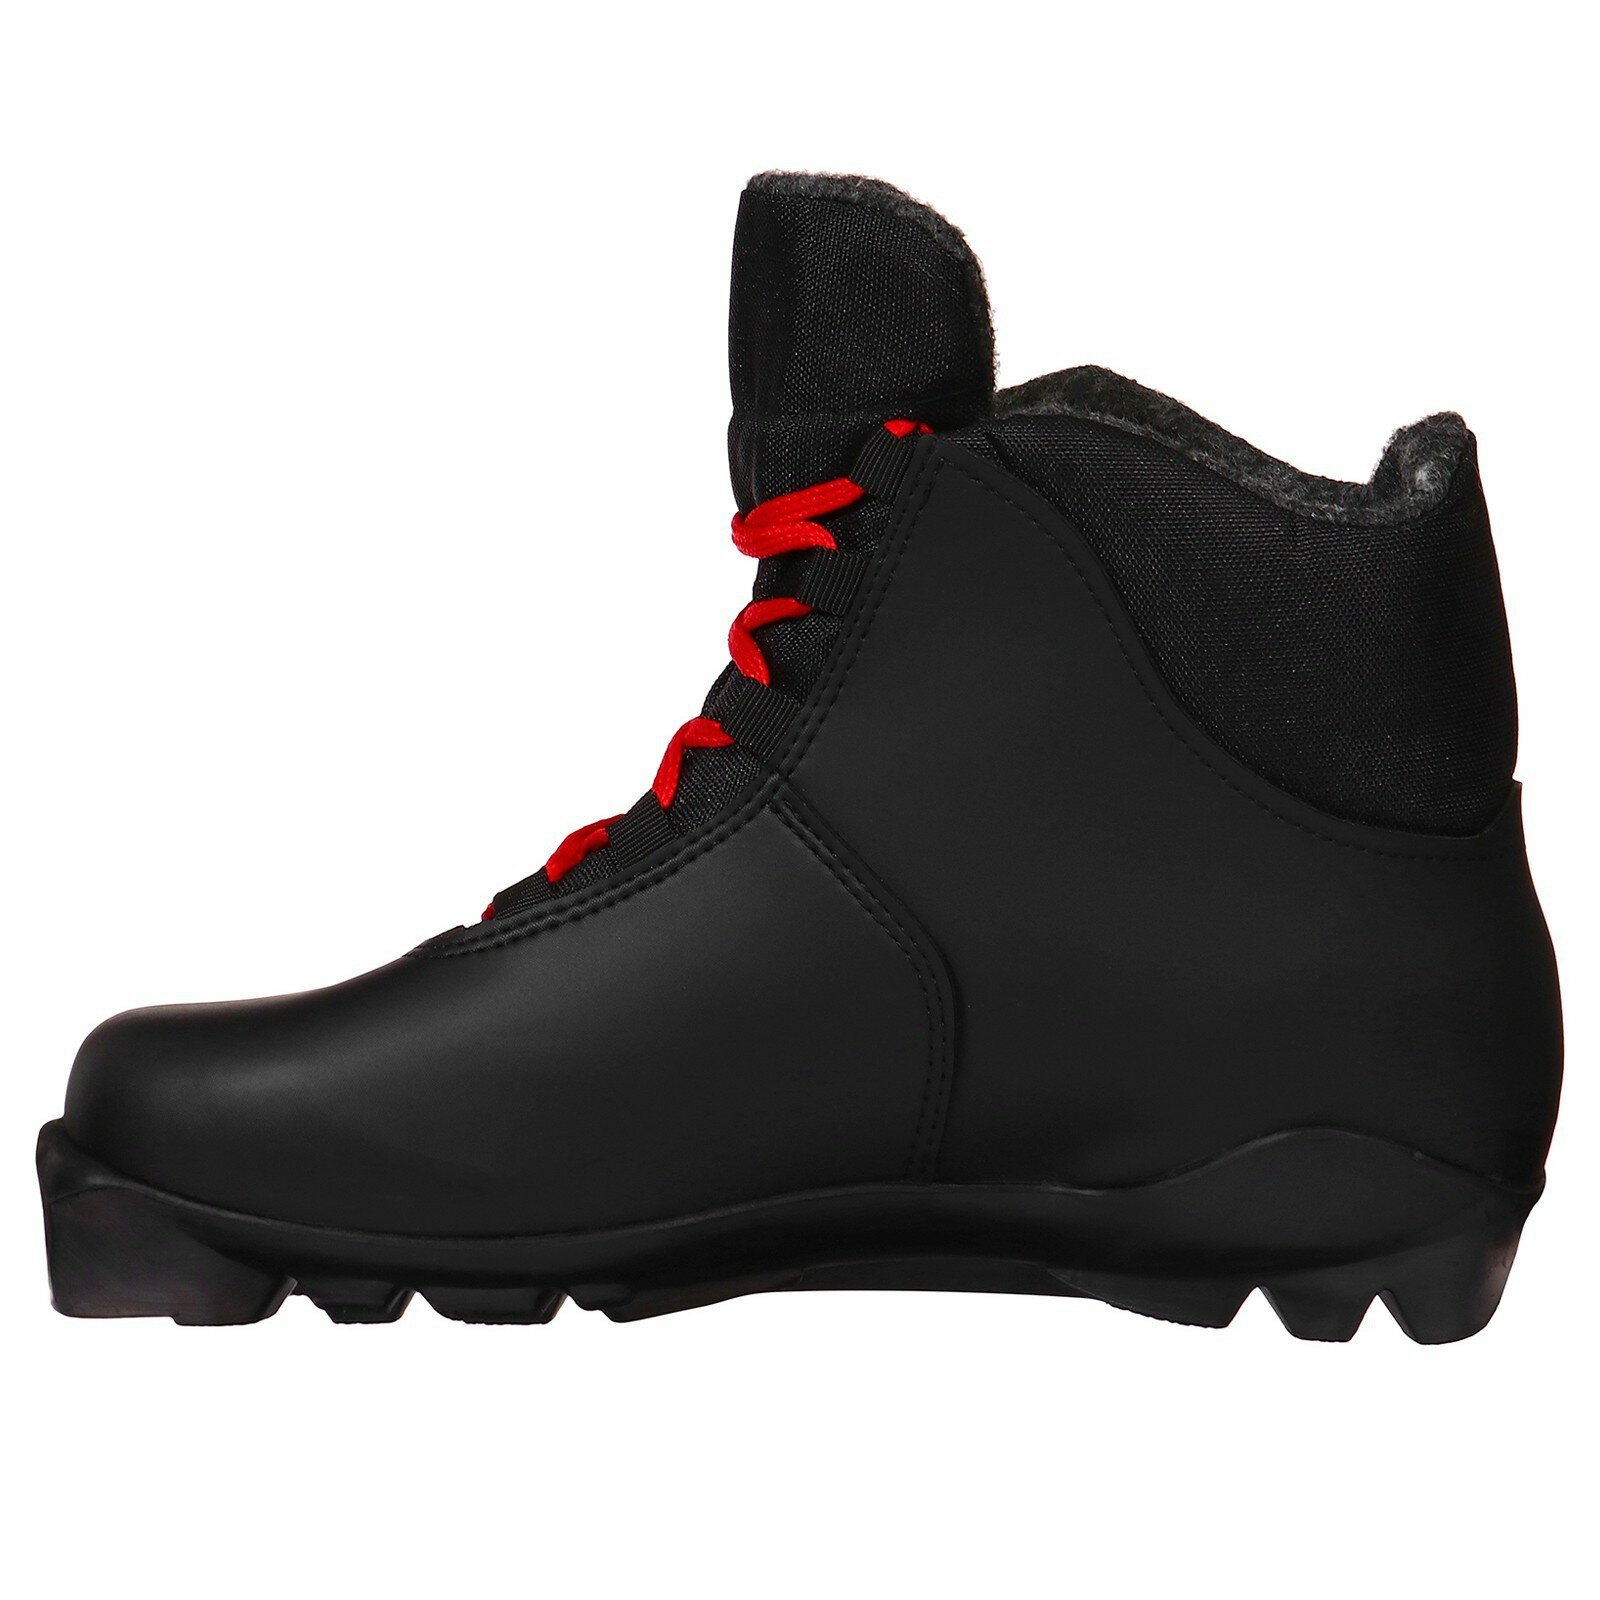 Ботинки лыжные Winter Star classic, SNS, размер 41, цвет чёрный, красный